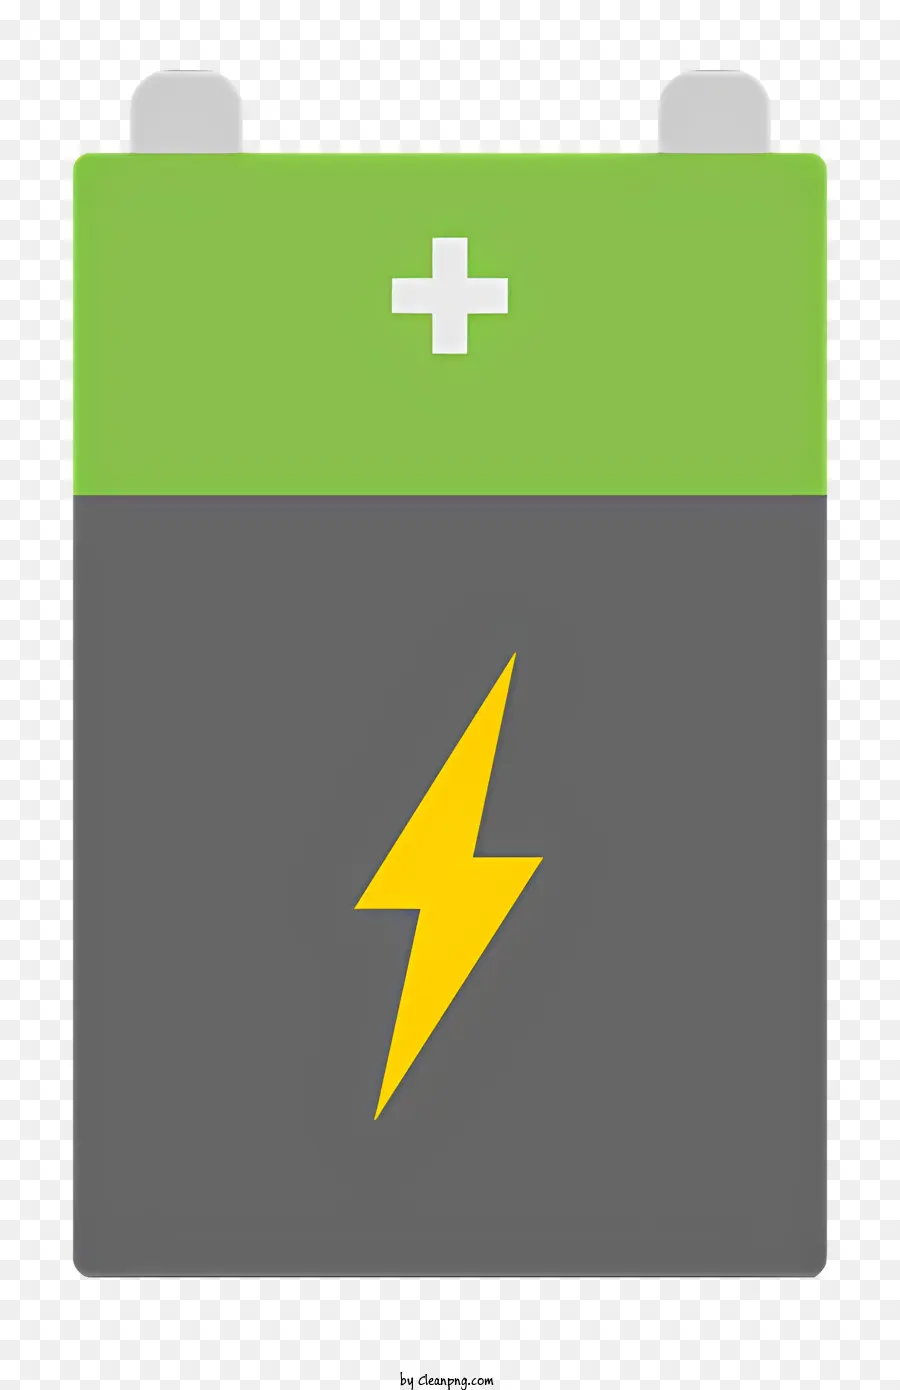 Batterie -Logo Batterie Elektrische Geräte Energiespeicher Elektrochemische Reaktion - Grüne Batterie mit Blitz speichert elektrische Energie